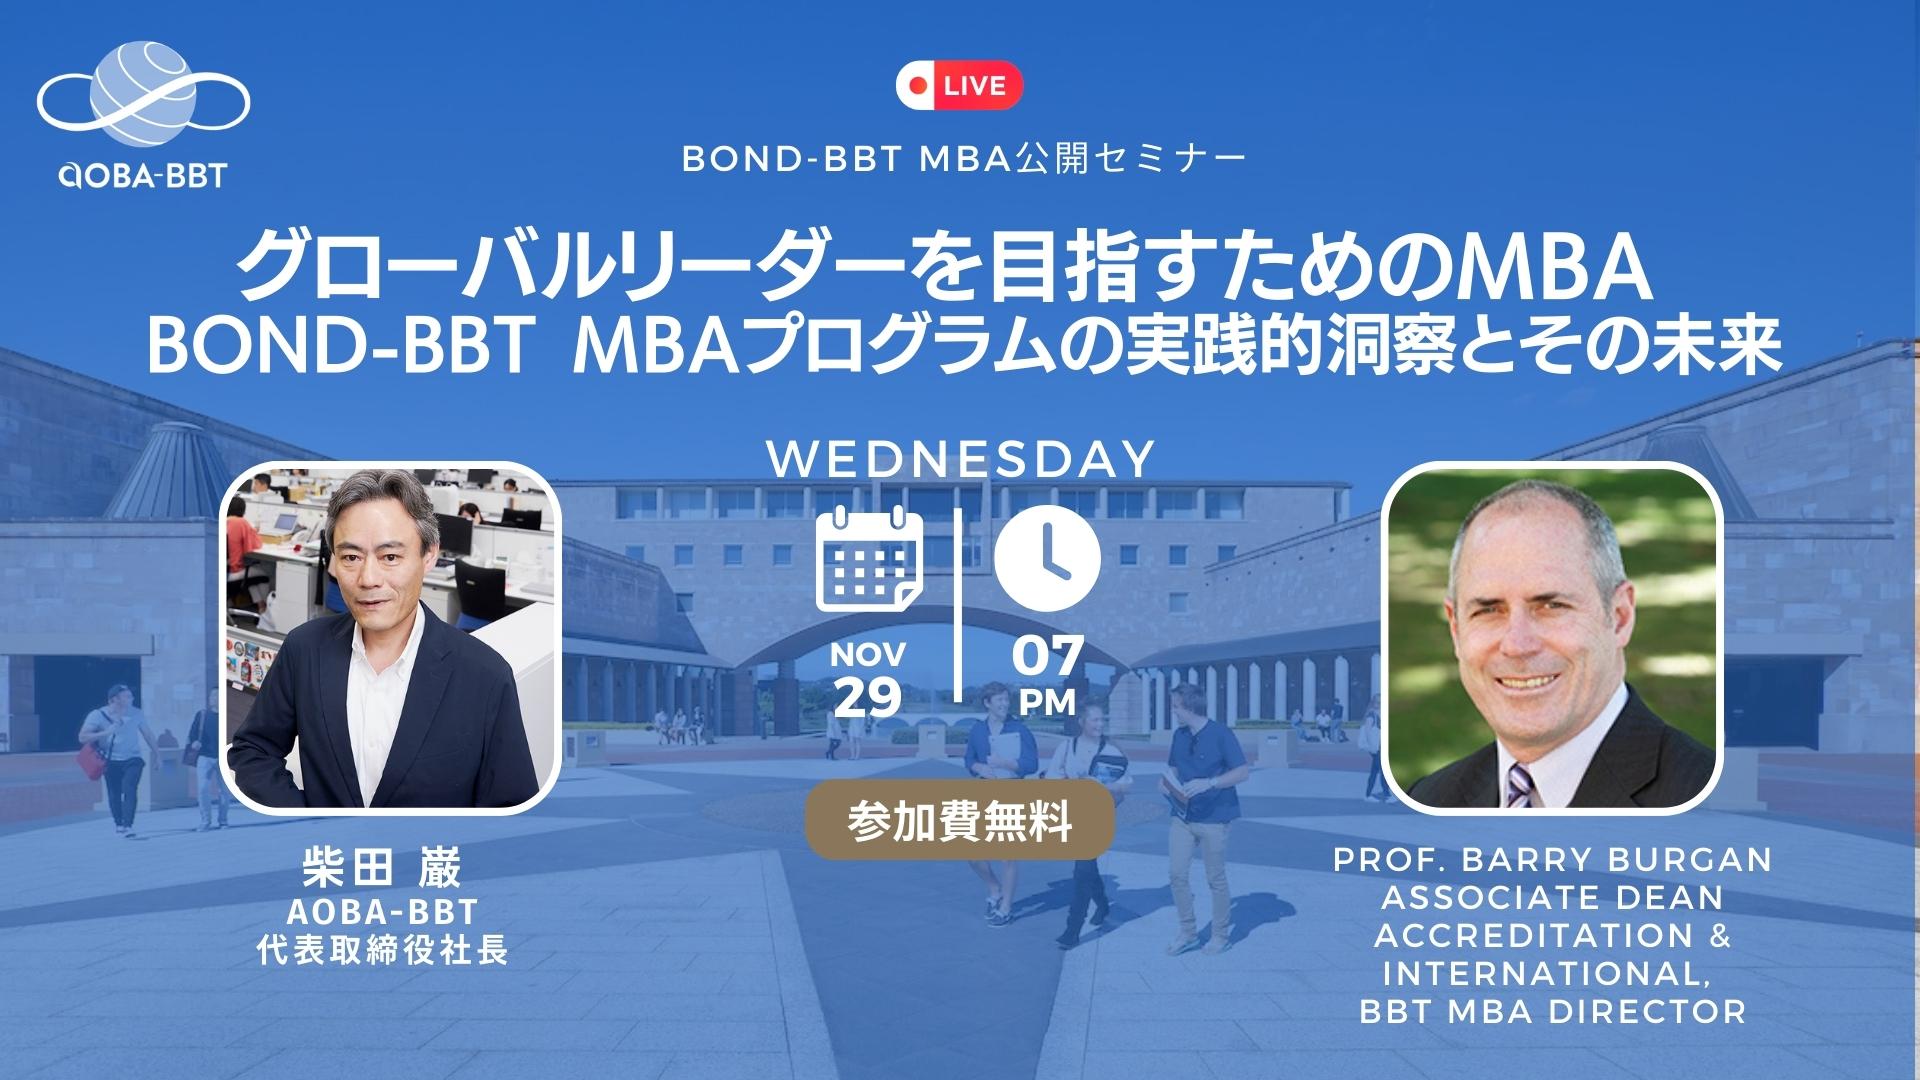 グローバルリーダーを目指すためのMBA - BOND-BBT MBAプログラムの実践的洞察とその未来 世界大学ランキング「The world's best small universities 2023」8位選出記念！ Bond-BBT MBAプログラム現地ディレクター、Barry Burgan氏が登壇